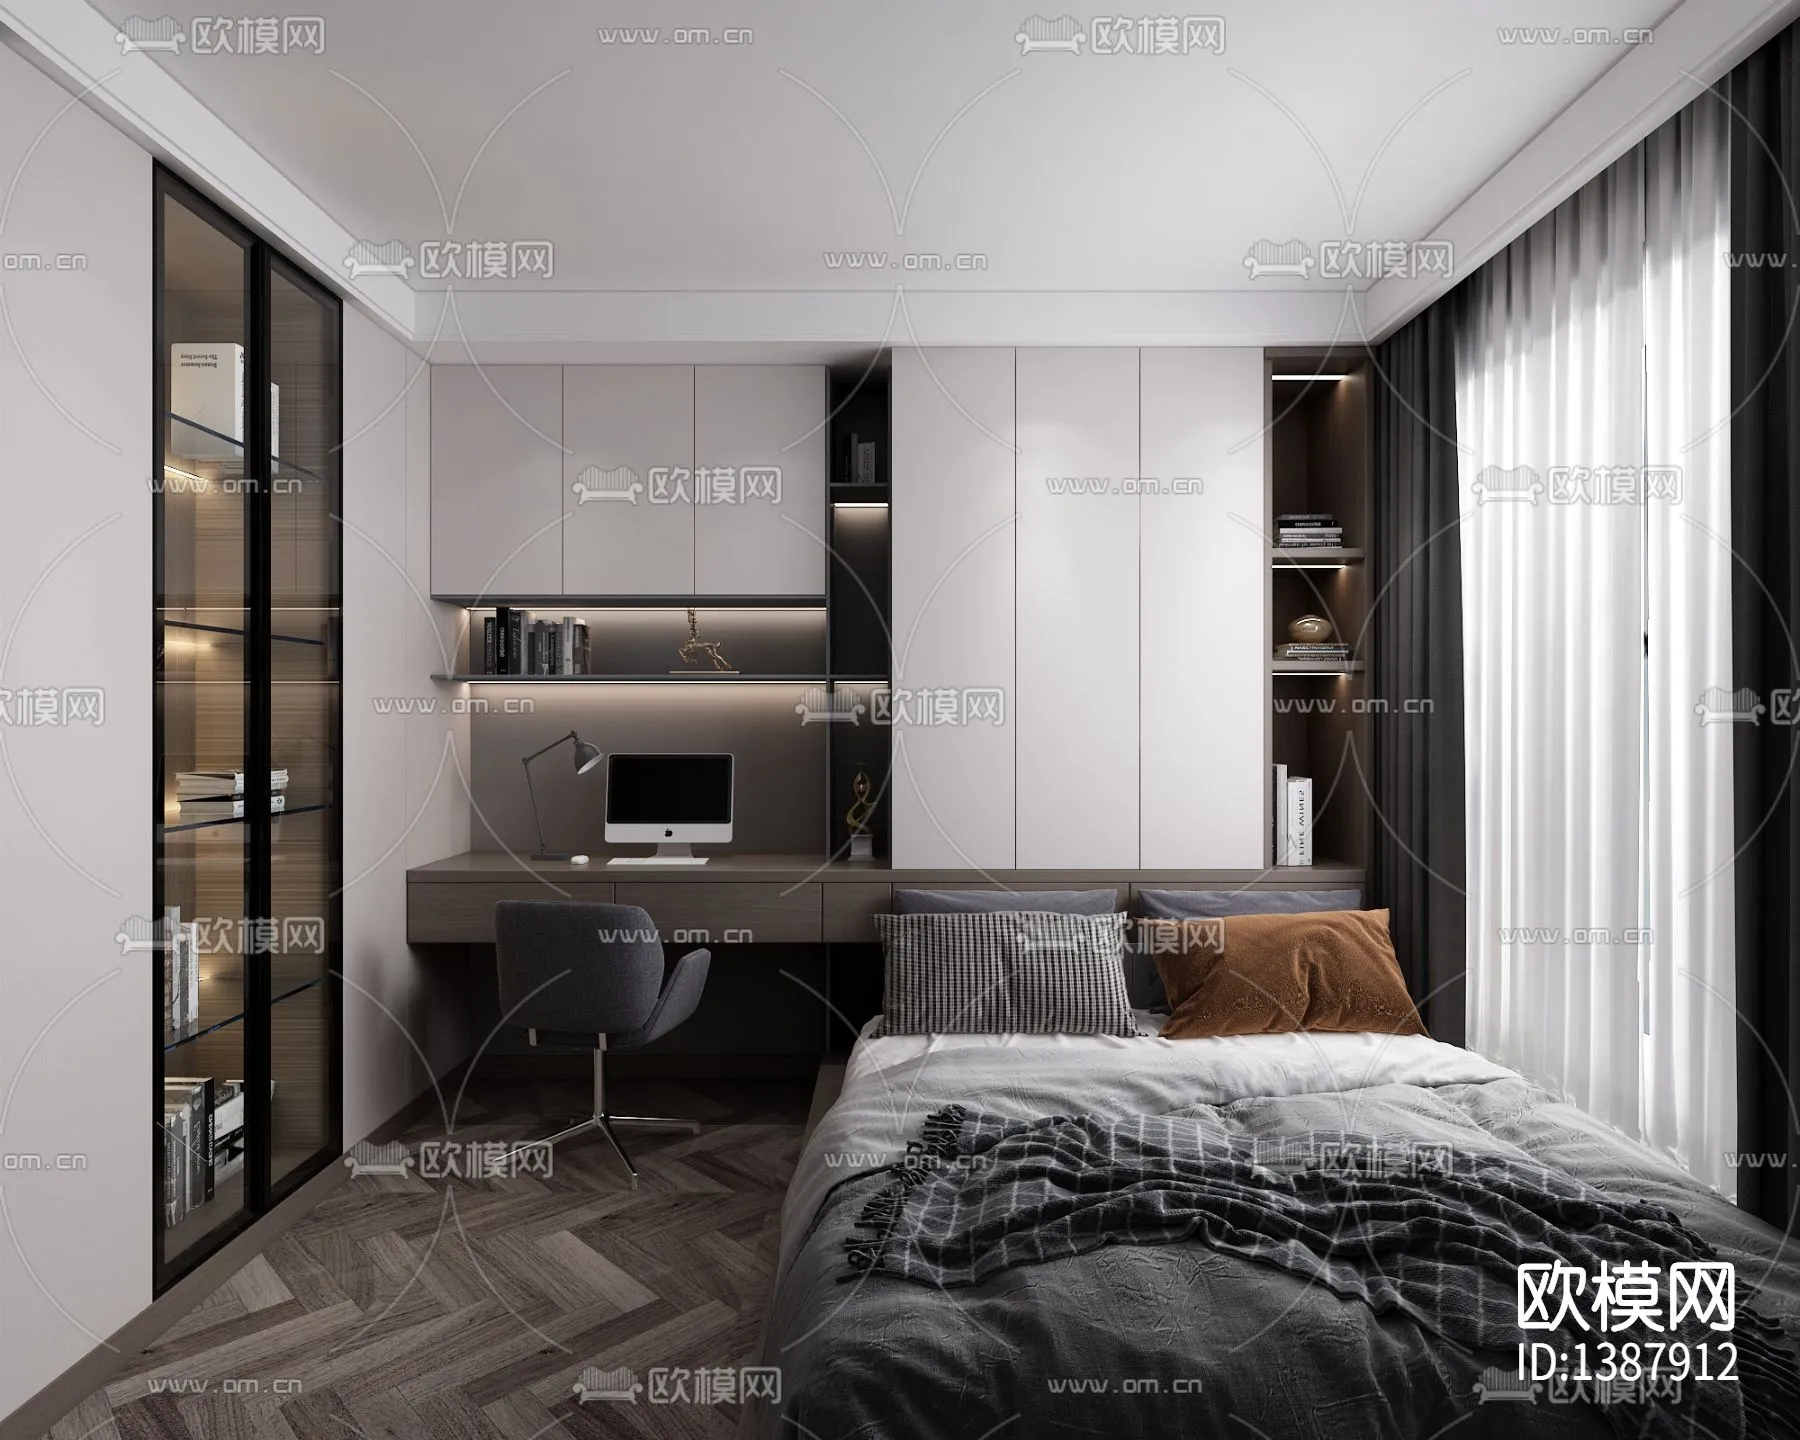 Bedroom 3D Scenes – 0246